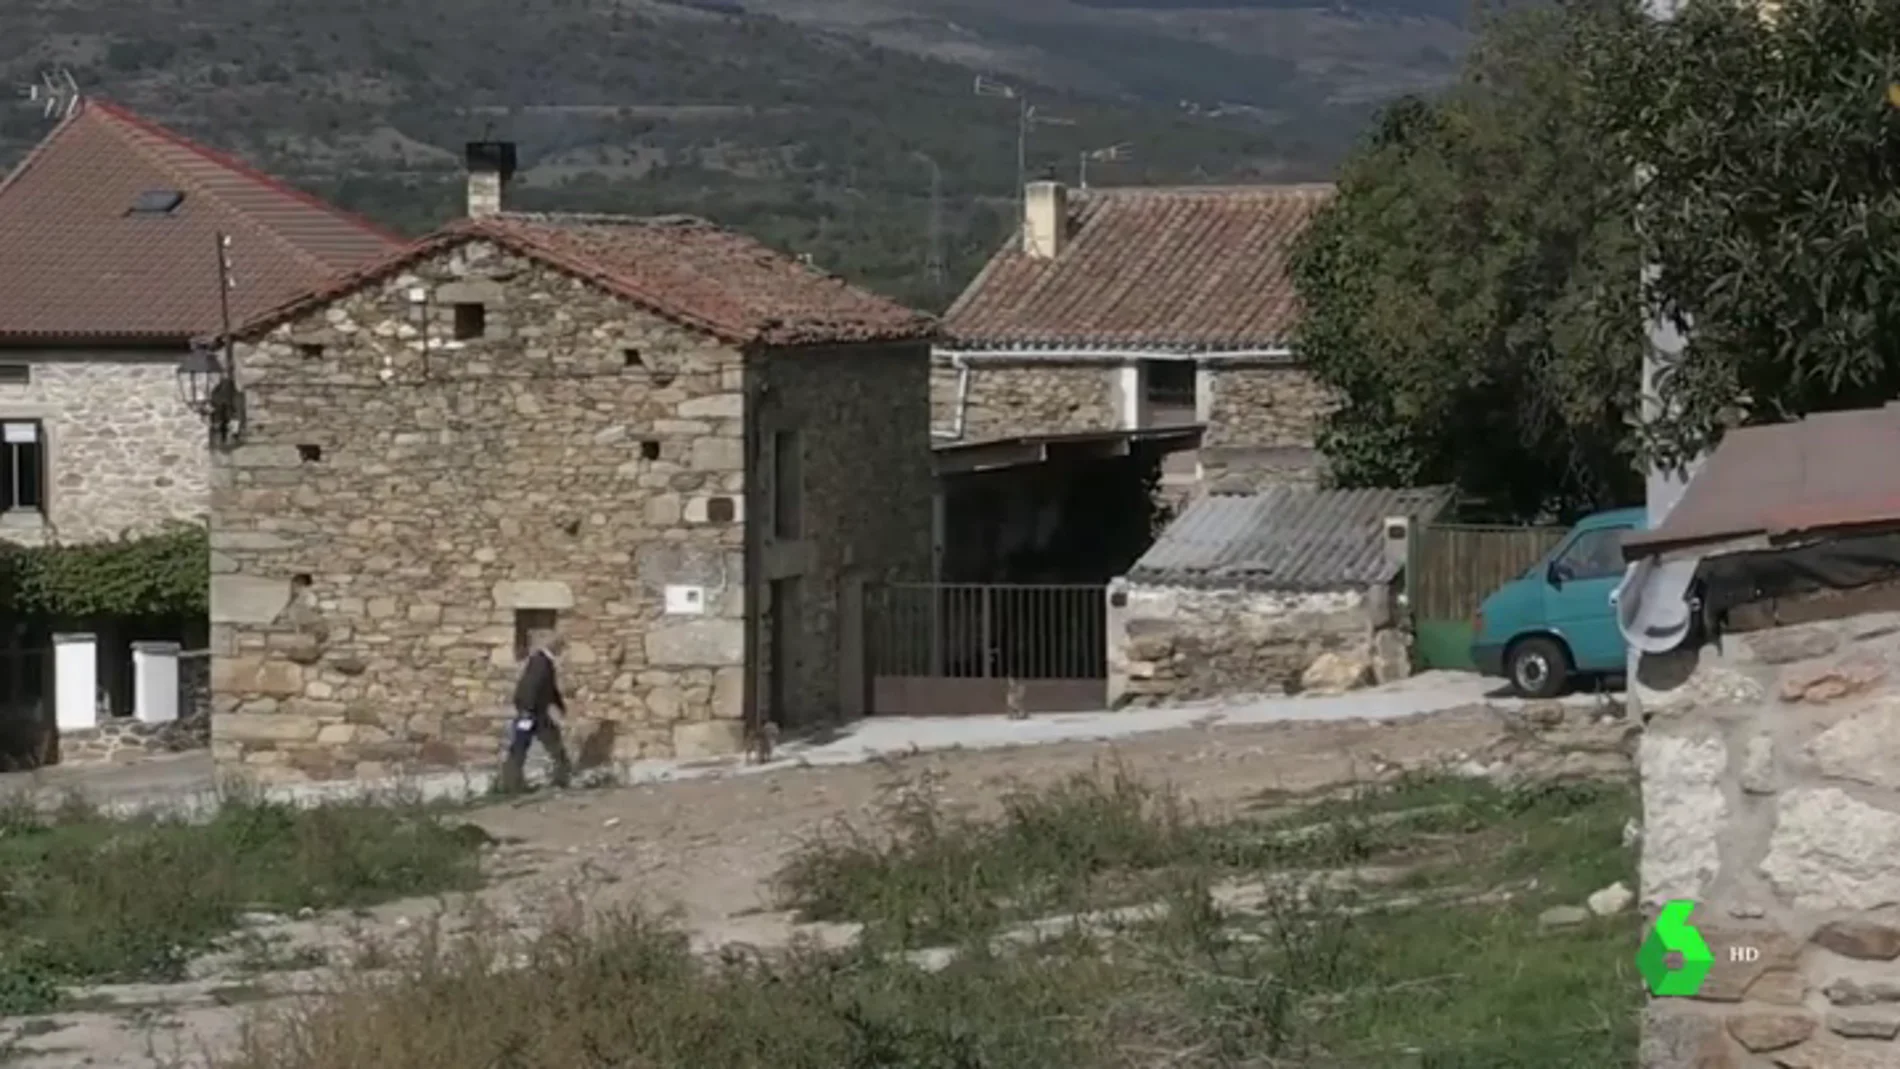 Imagen de Madarcos, el pueblo más pequeño de la Comunidad de Madrid